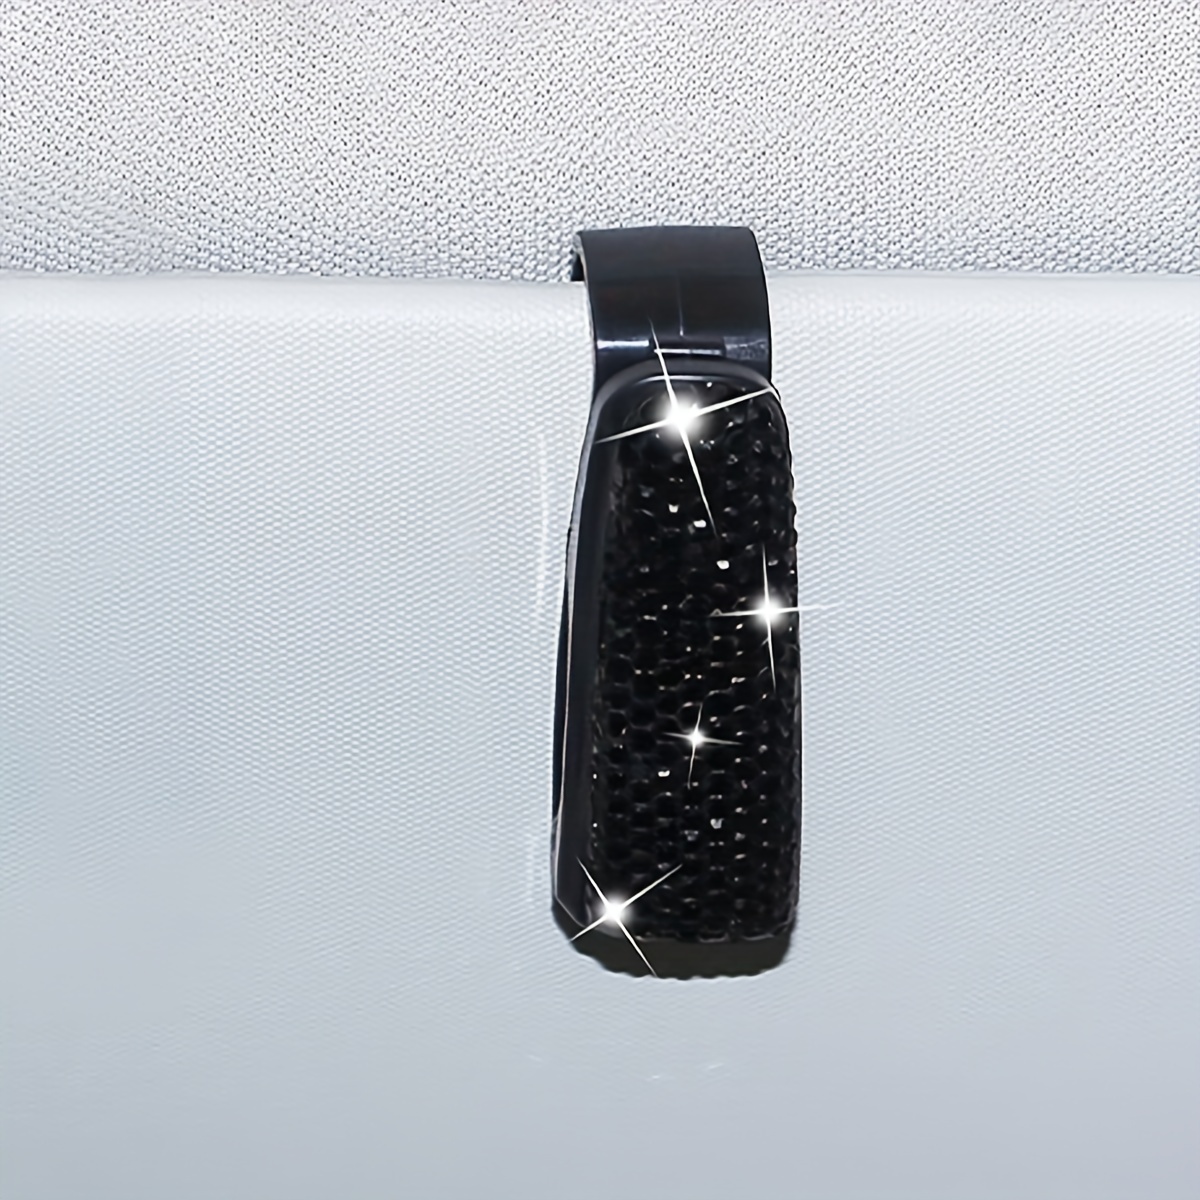 Doppelkopf-Brillenclip Mit Künstlichem Diamanten Für Das Auto.  Multifunktionaler Brillenclip Mit Künstlichem Diamanten Für Das Auto - Temu  Switzerland